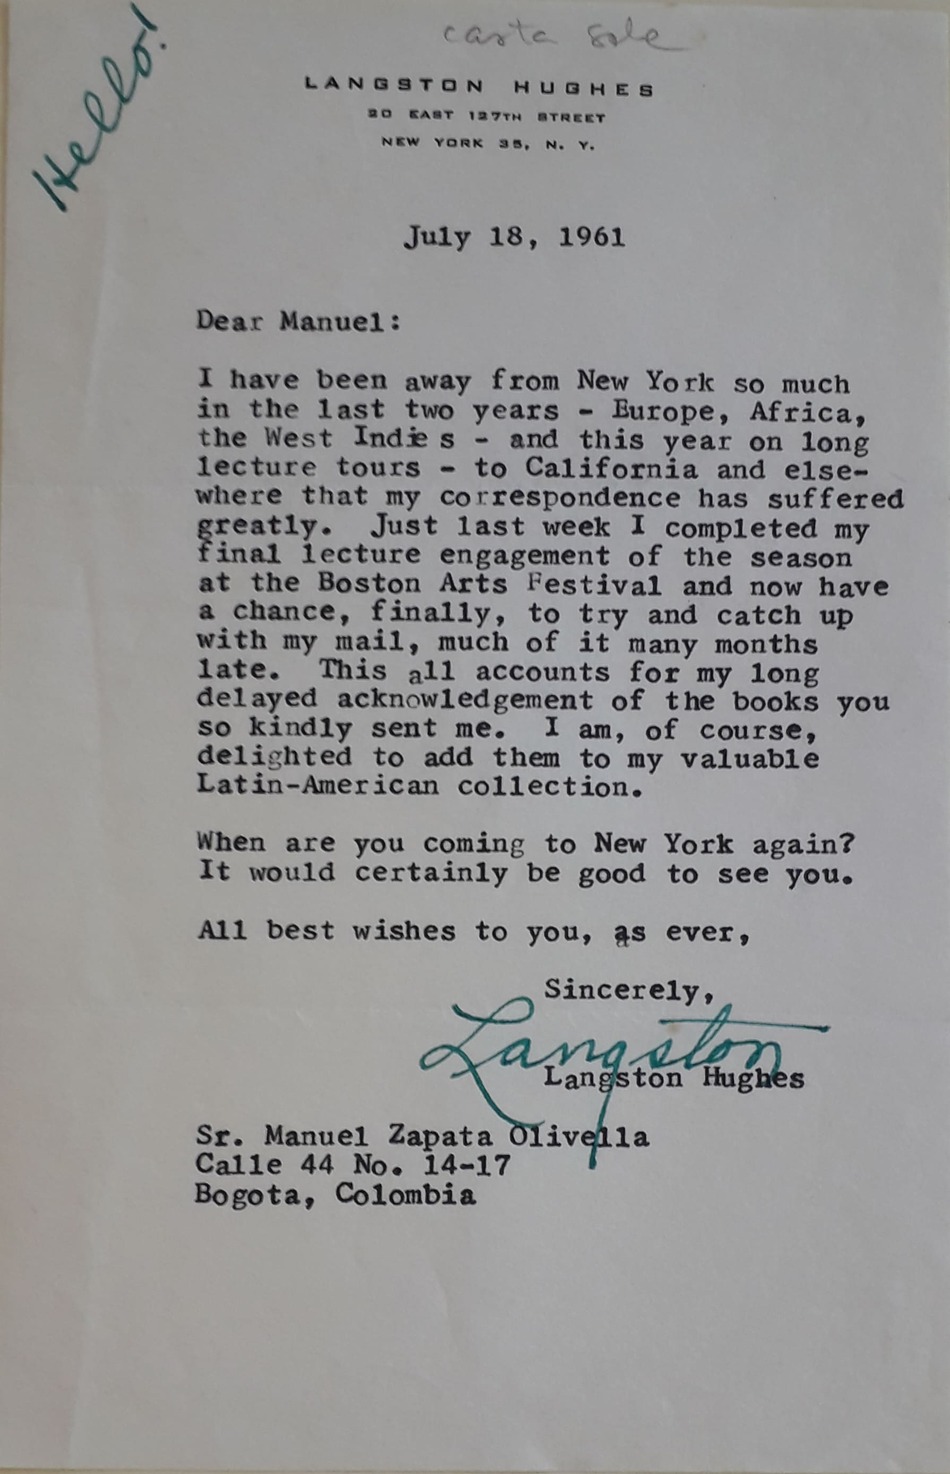 Carta de Lansgton Hughes dirigida a Manuel Zapata Olivella que muestra el interés de un nuevo encuentro, 18 de julio de 1961, enviada desde la residencia del poeta afroamericano.